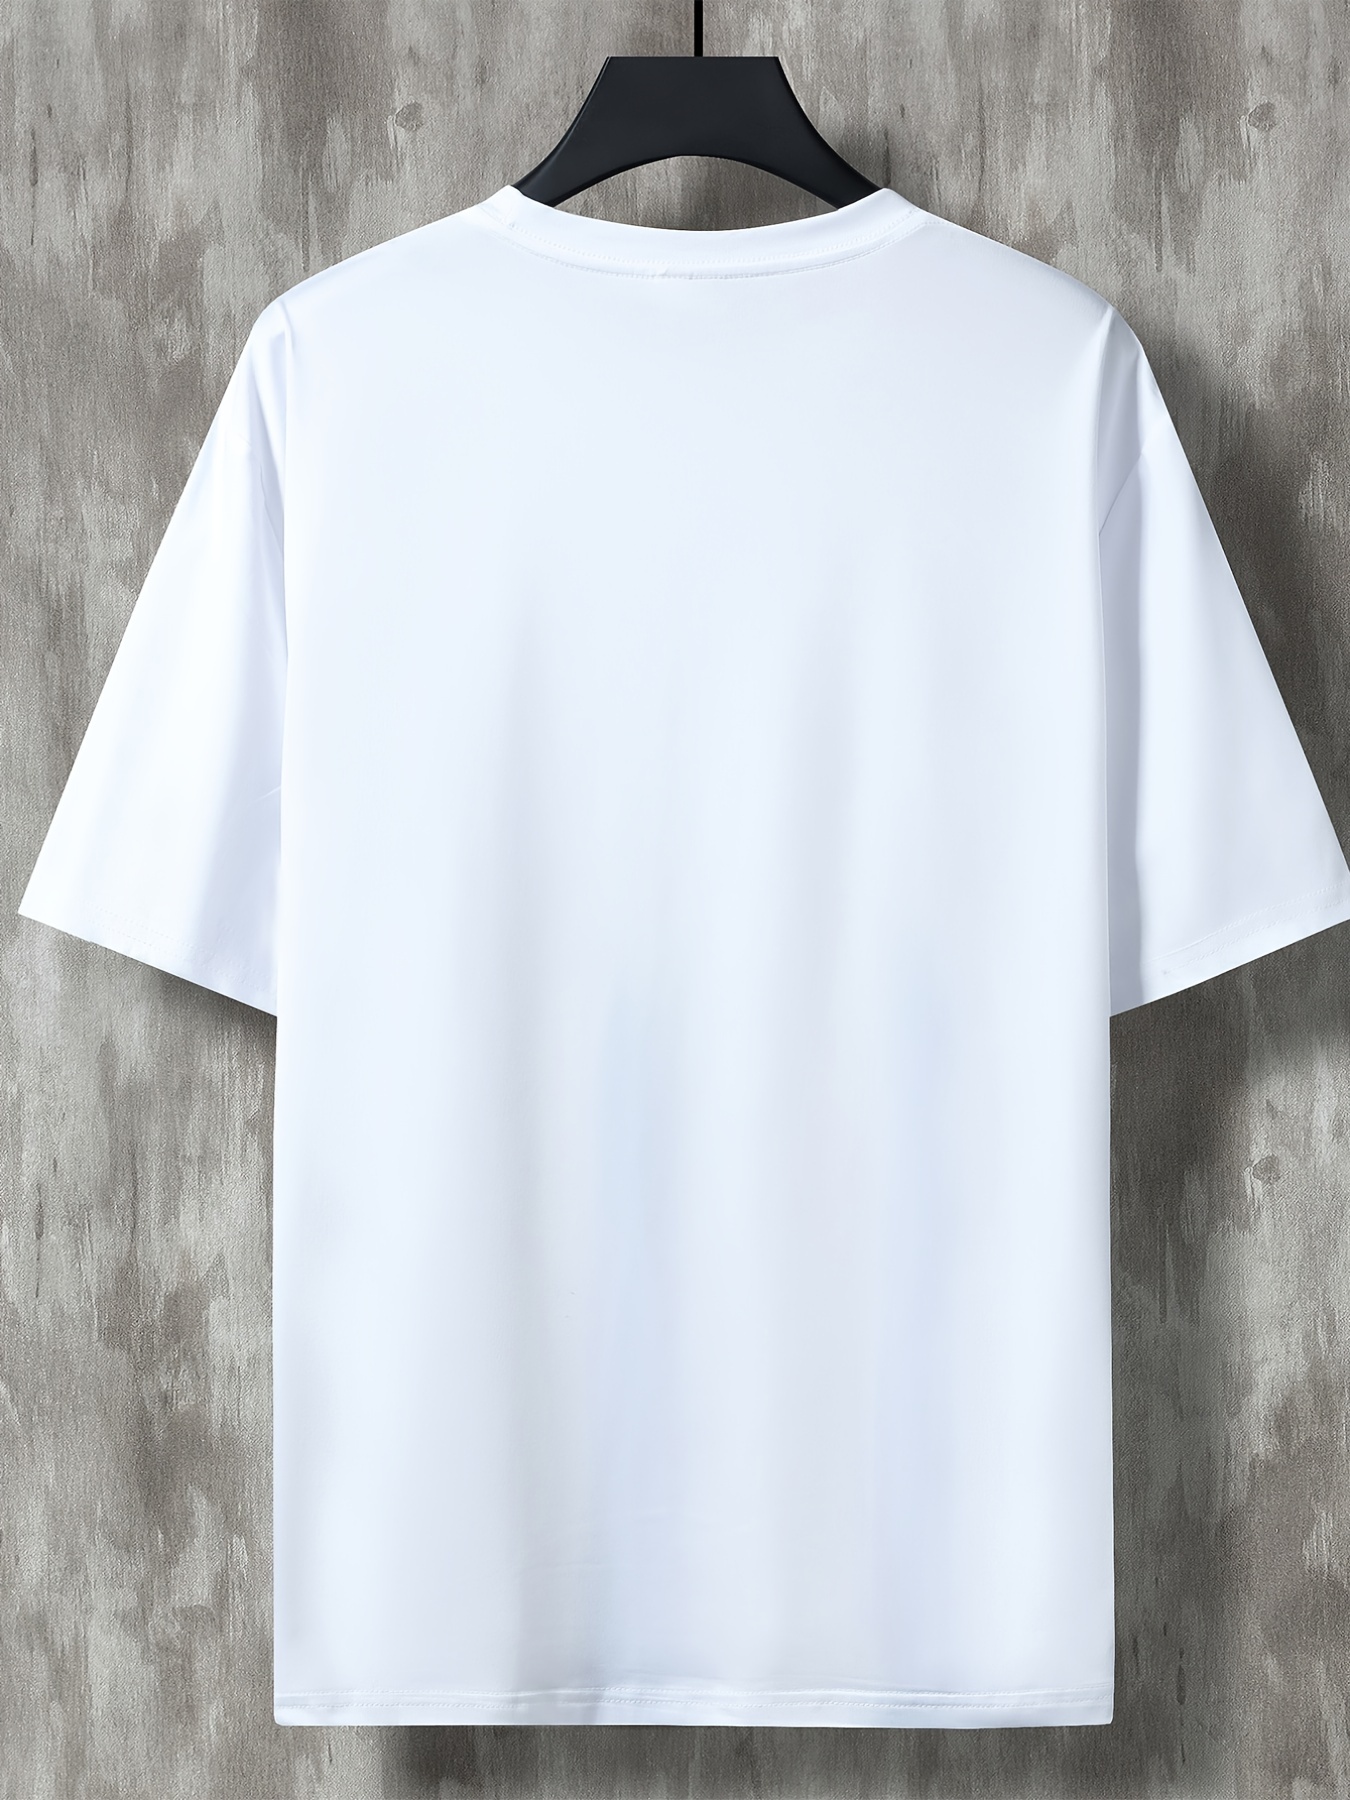  Hombre Verano Casual Papel Plano Impresión Camiseta Blusa Manga  Corta Cuello Redondo Tops Camiseta Blanco Camisetas Hombres, Blanco : Ropa,  Zapatos y Joyería